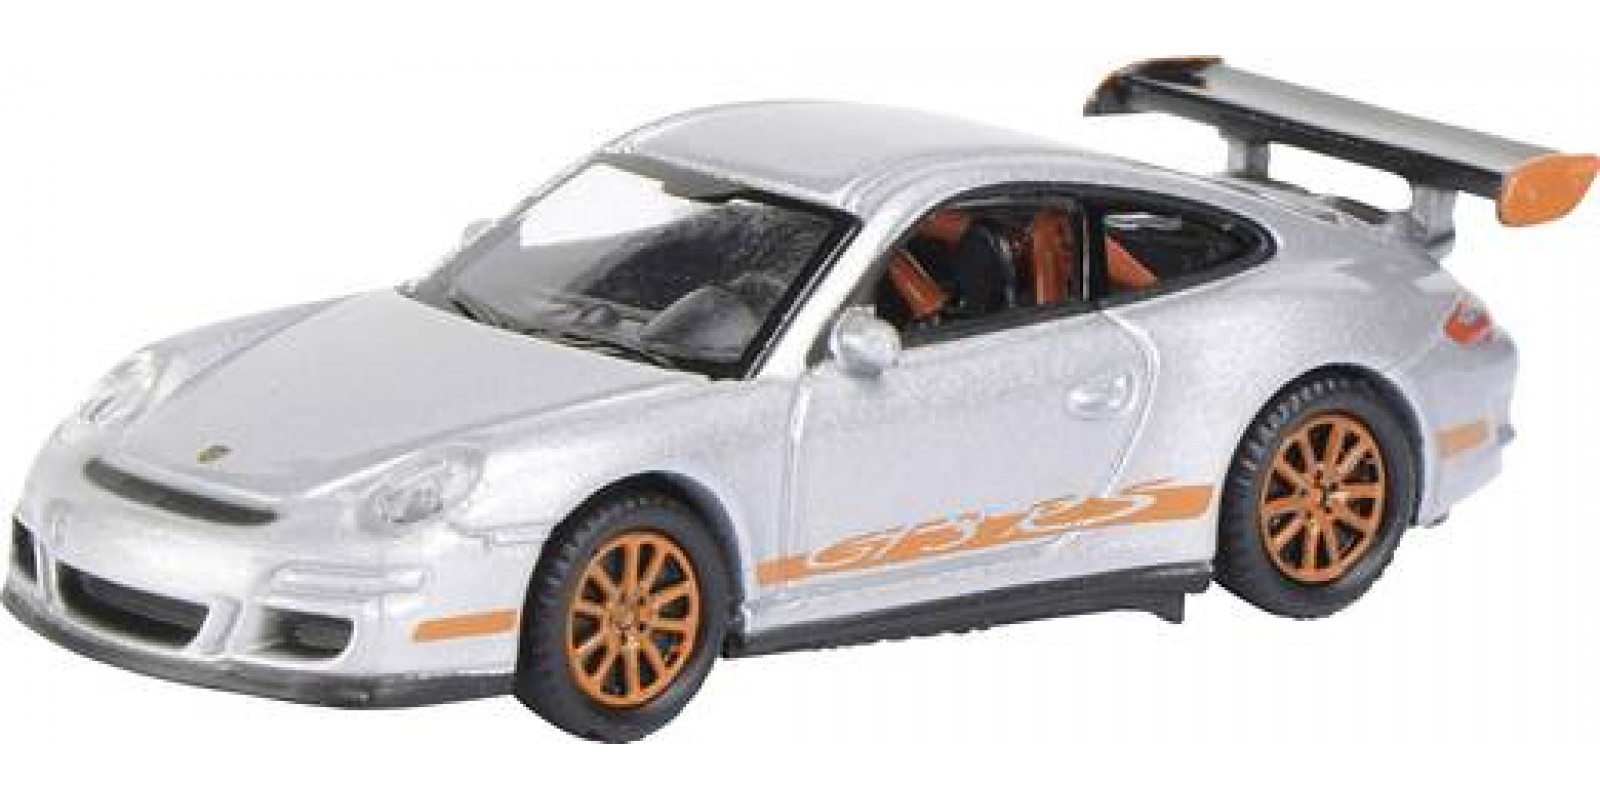 SC452800200 H0 Porsche 911 GT 3 RS silber orange